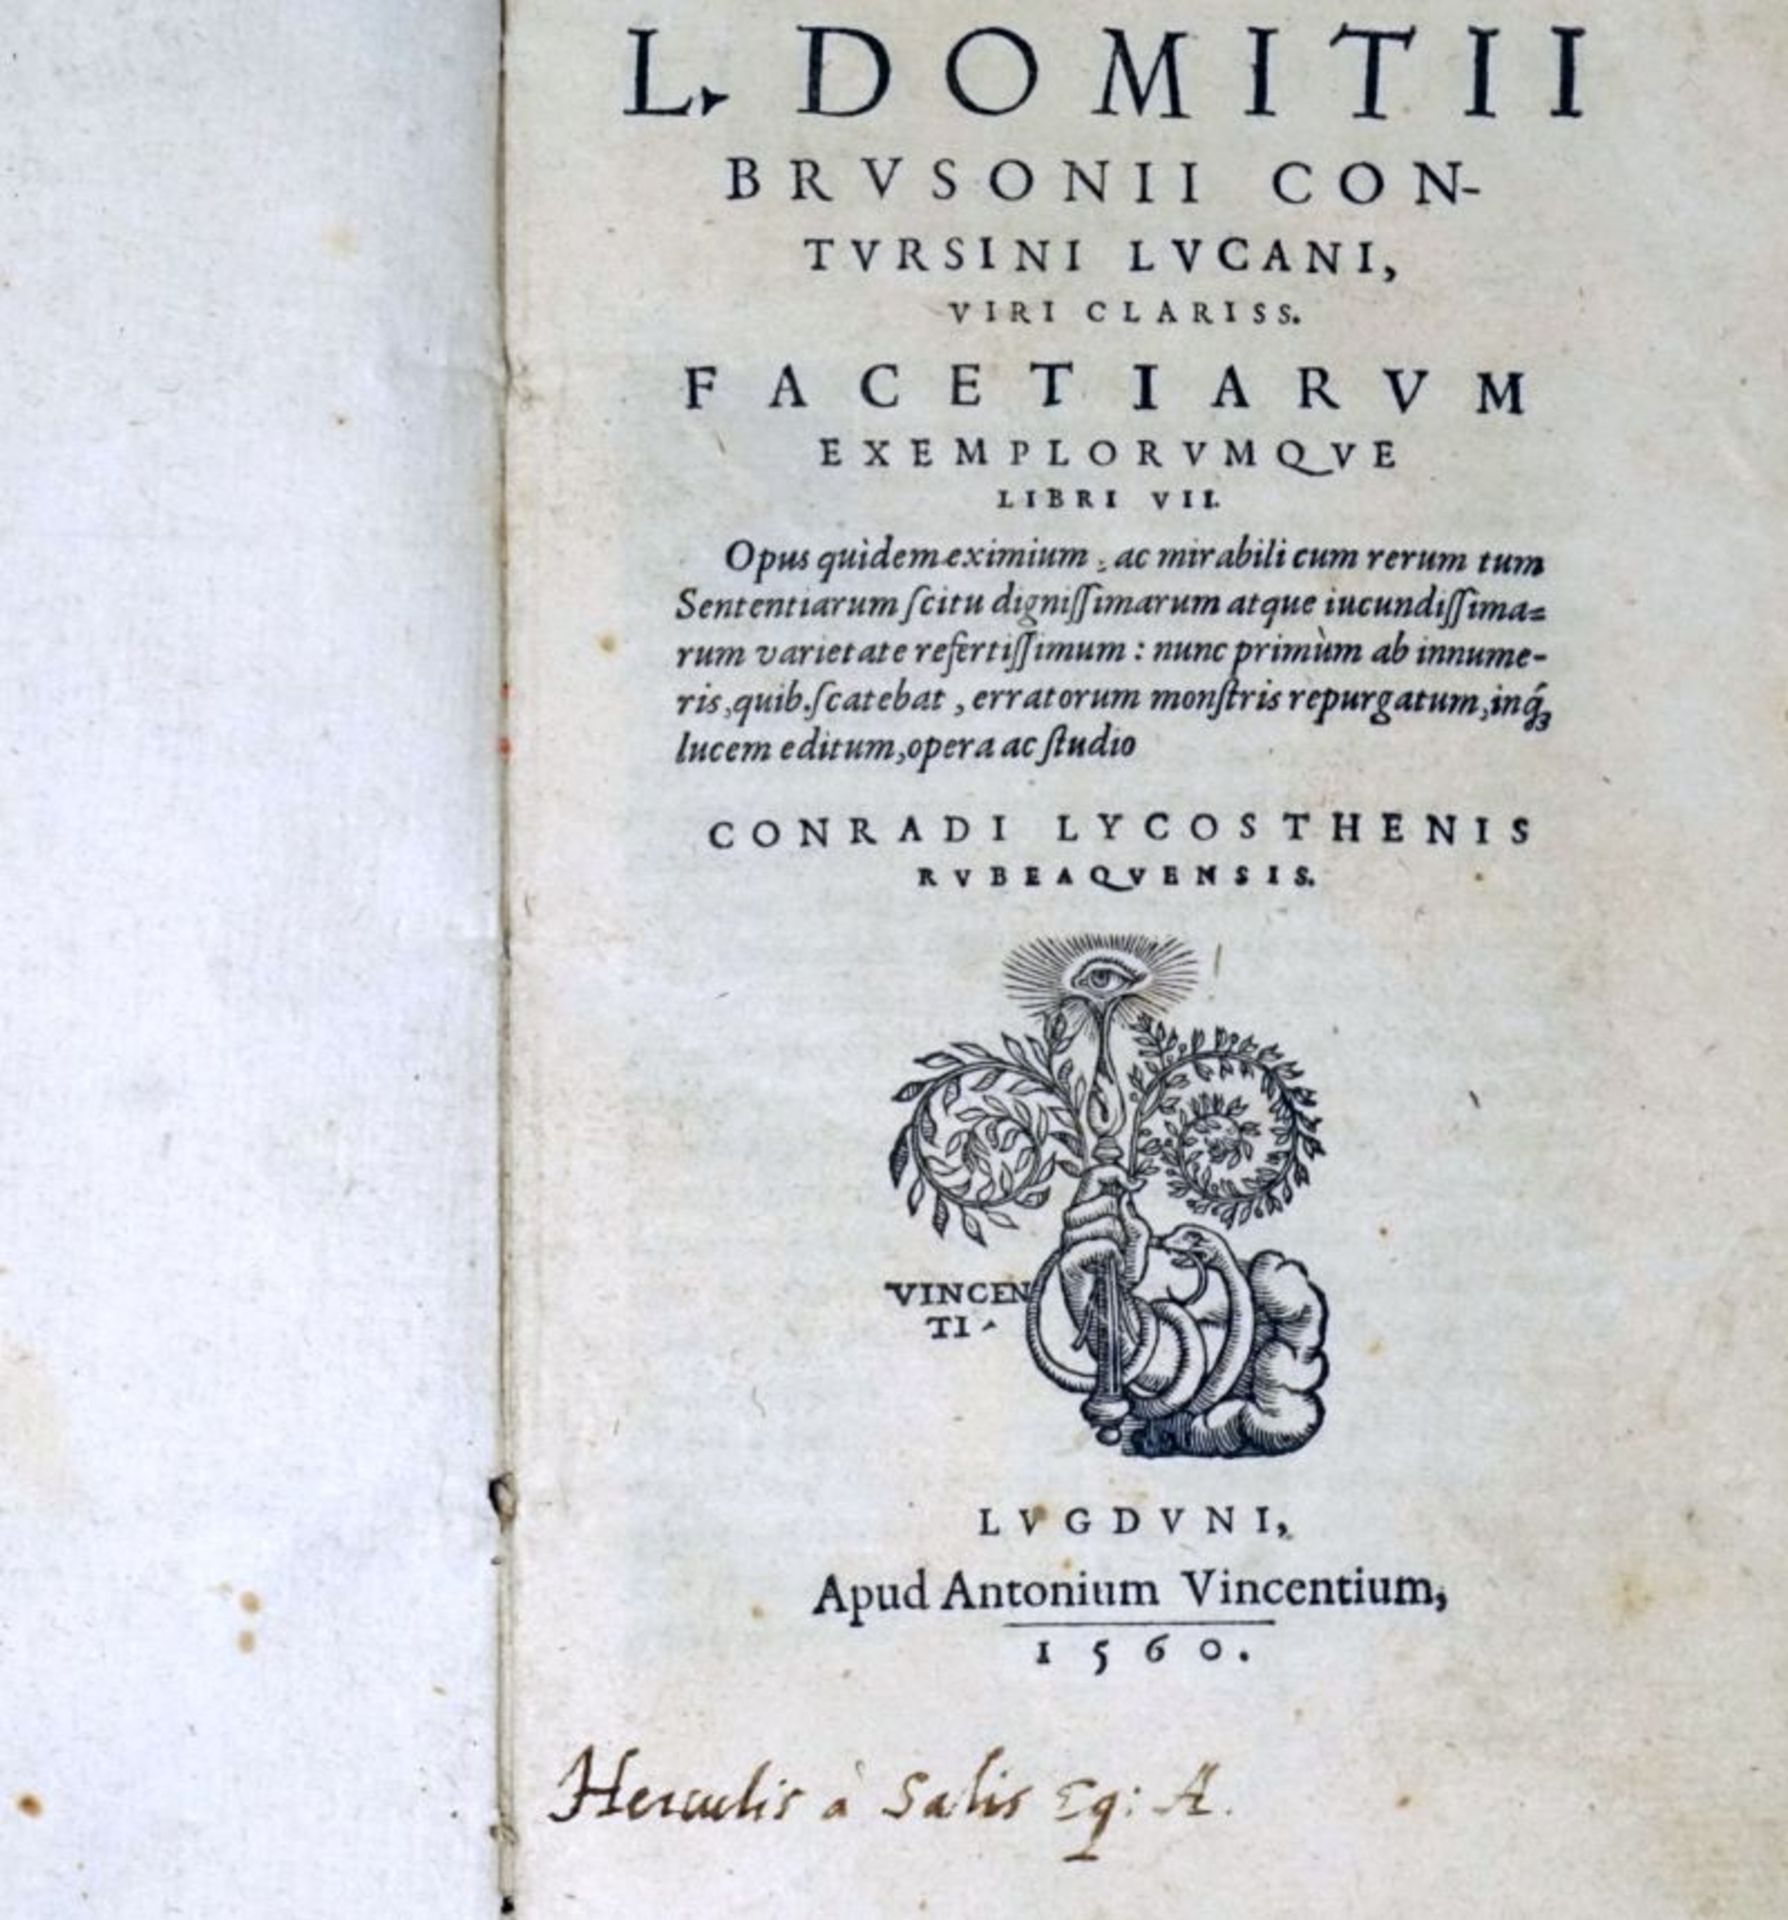 Brusoni, Lucio Domizio: Facetiarum exemplorumque libri VII.